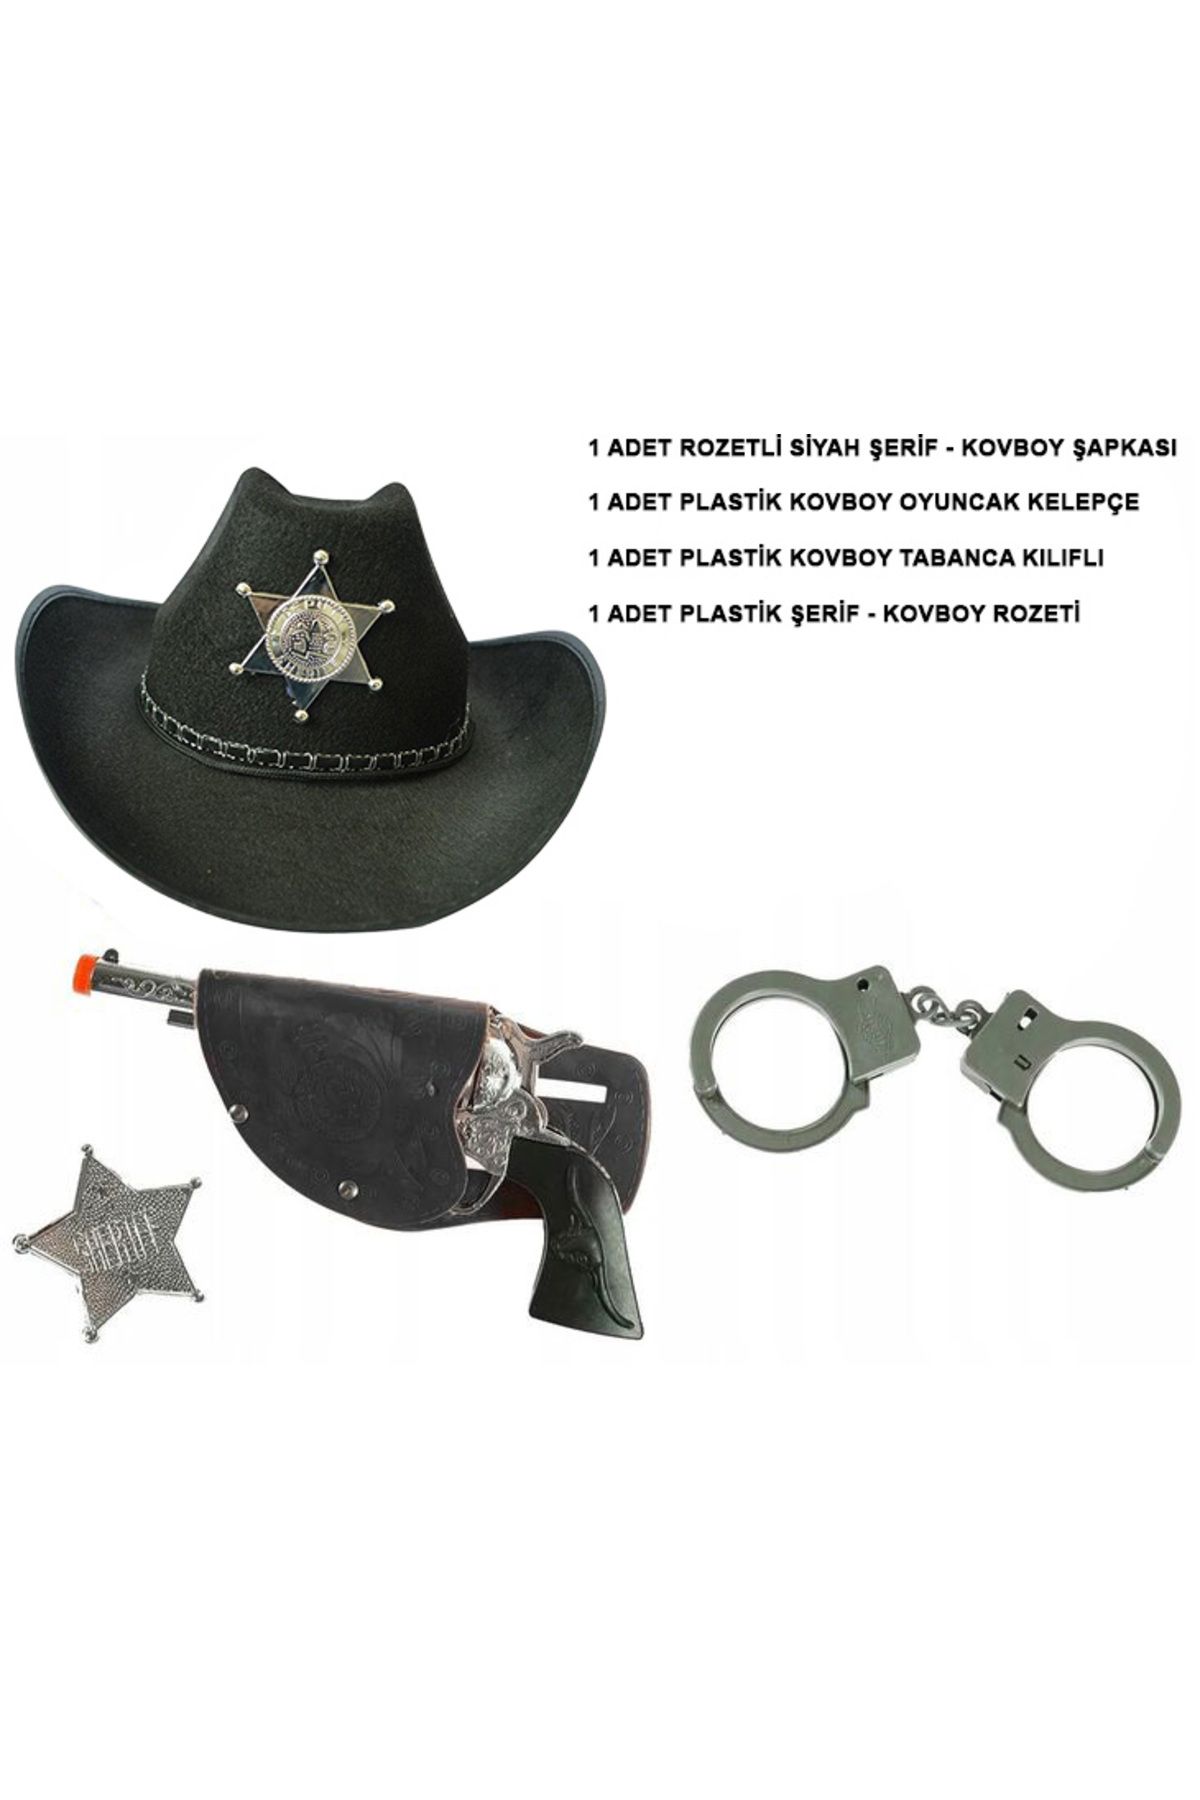 HobiCity Çocuk Boy Siyah Şerif-Kovboy Şapka Tabanca Rozet ve Kelepçe Seti 4 Parça (4434)